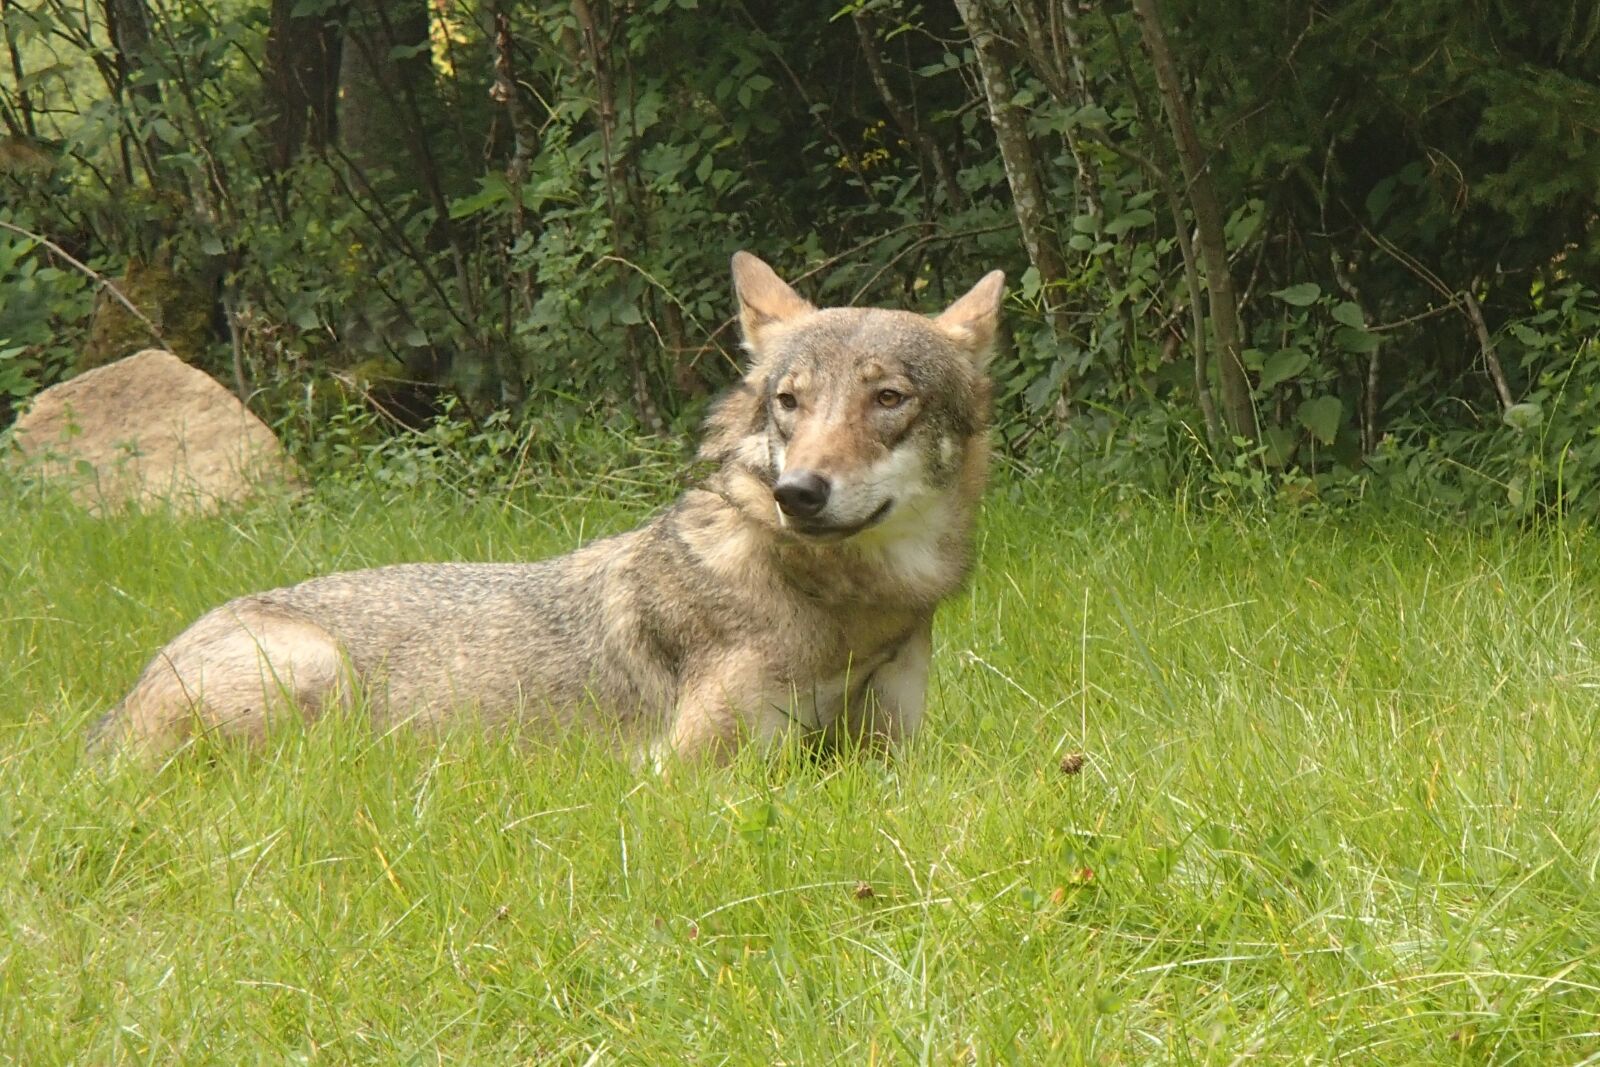 Olympus TG-630 sample photo. Wolf, nature, animal photography